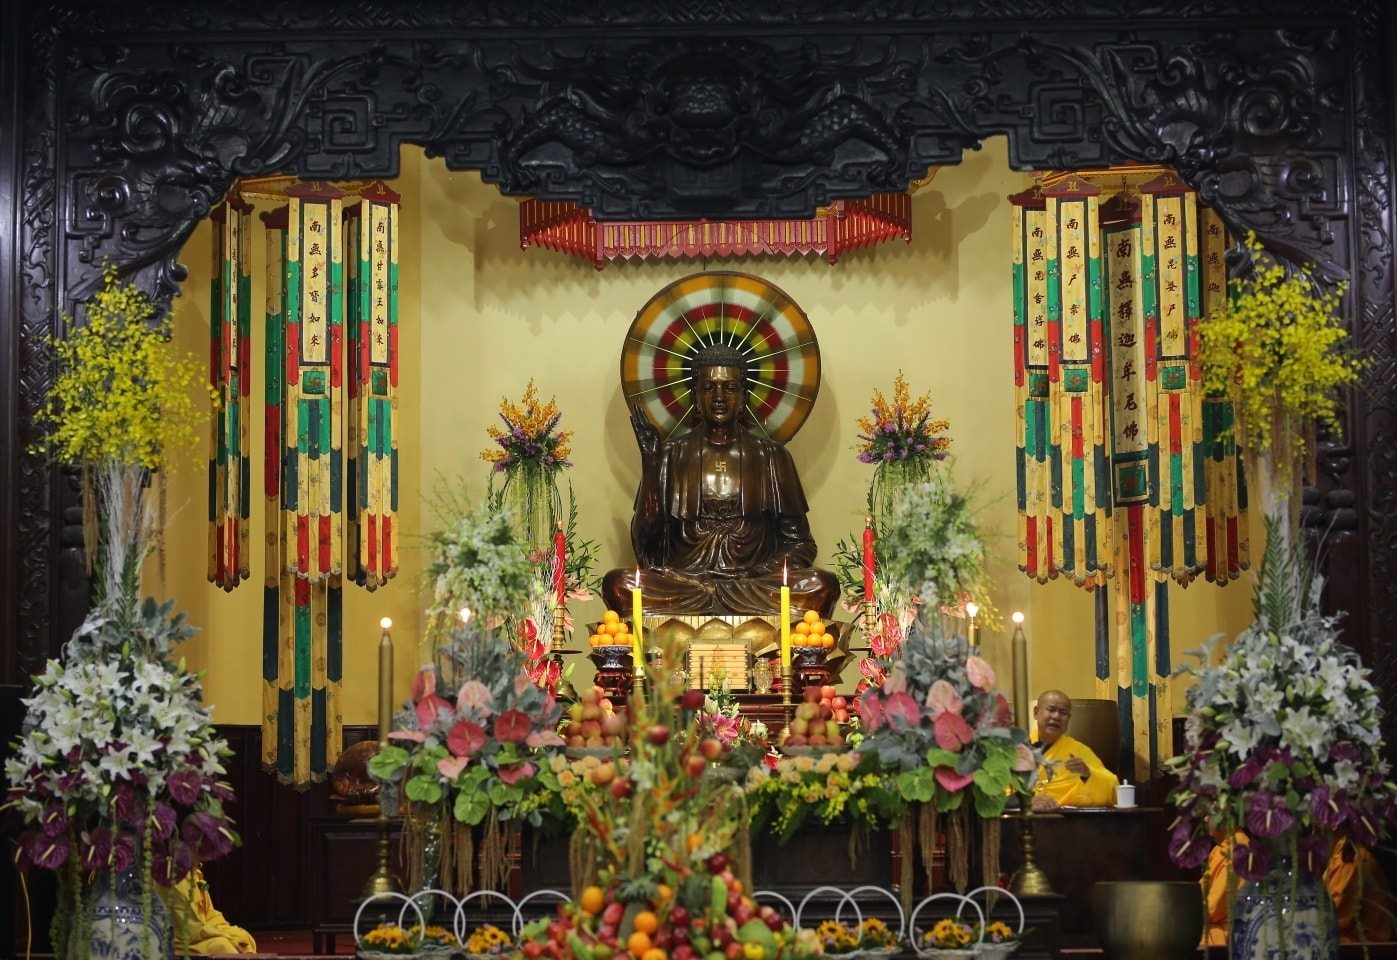 Chùa Linh Sơn - Viếng thăm chốn thiền định lâu đời ở Đà Lạt 8